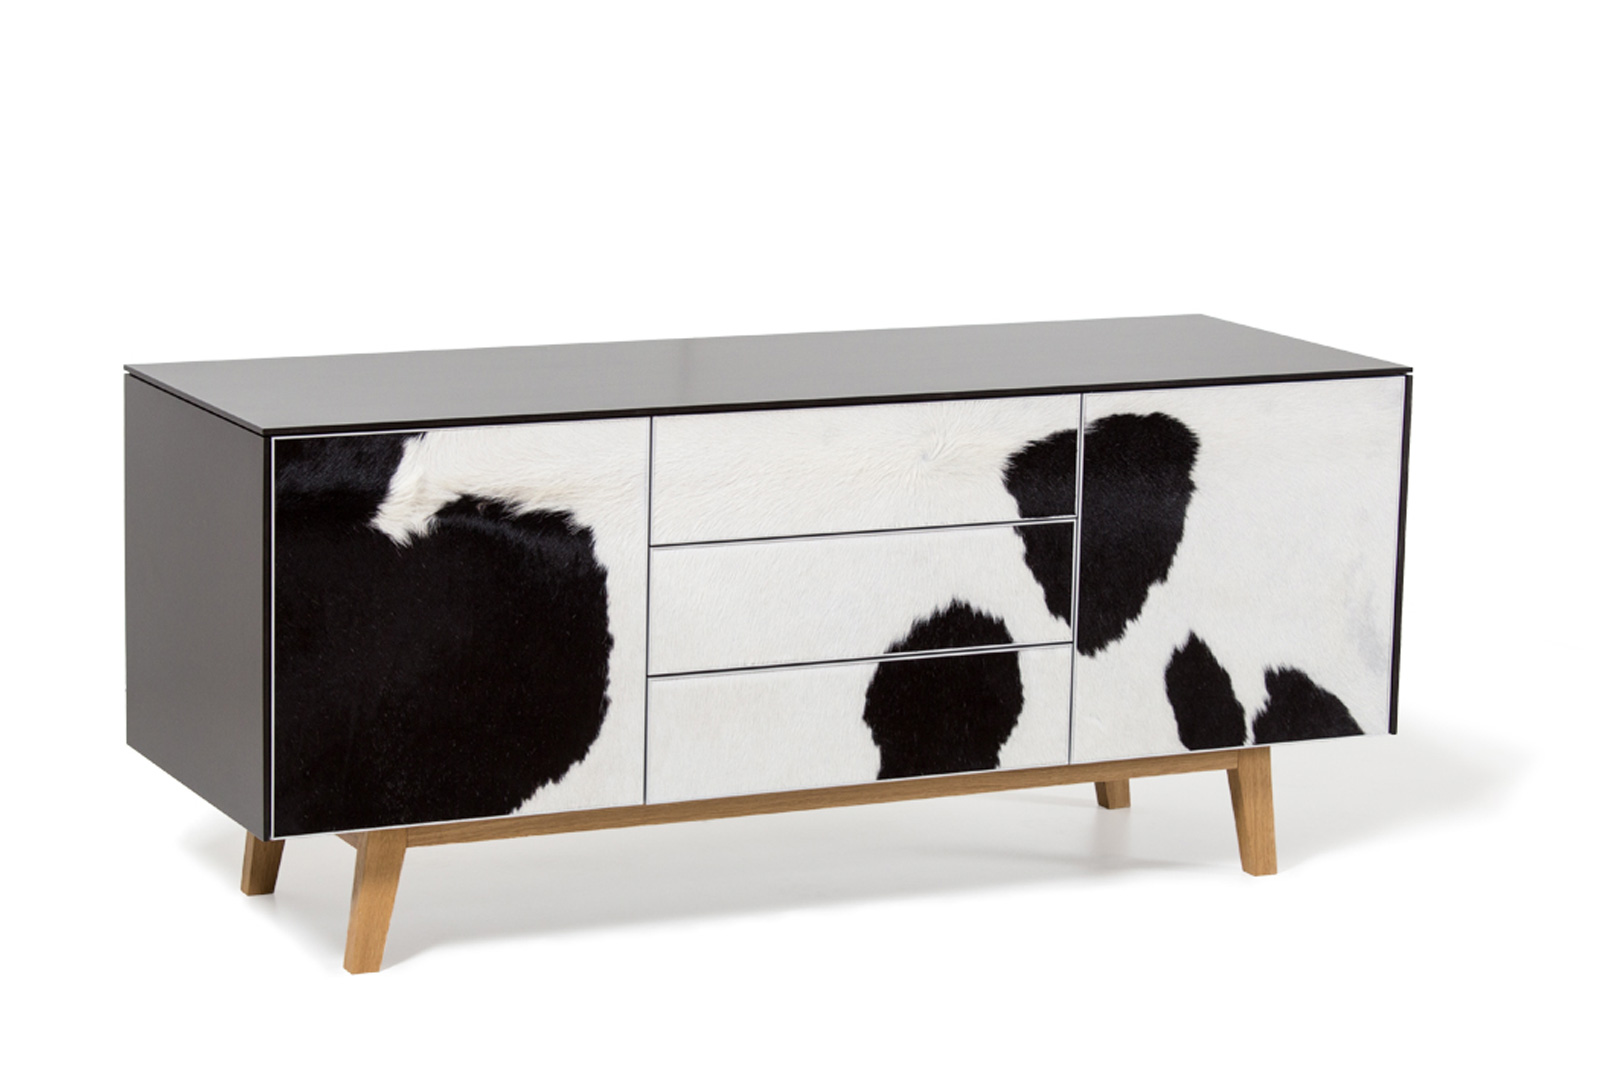 Sideboard avec peau de vache de la menuiserie suisse Weiss Design, Zug